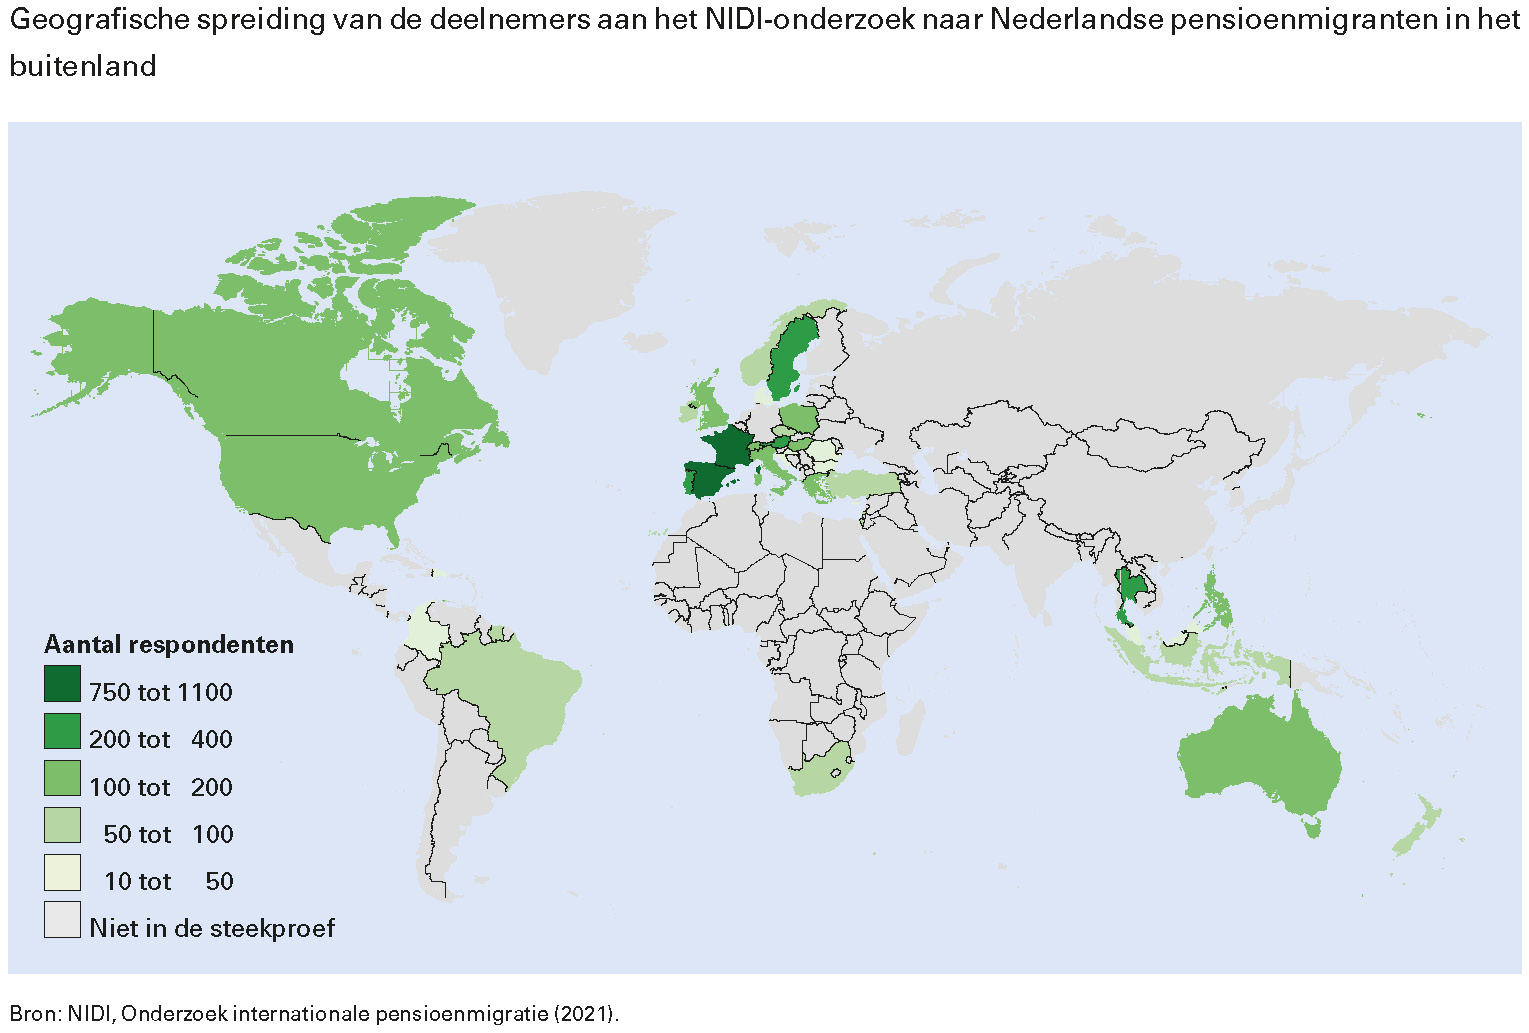 Geografische spreiding van de deelnemers aan het NIDI-onderzoek naar Nederlandse pensioenmigranten in het buitenland